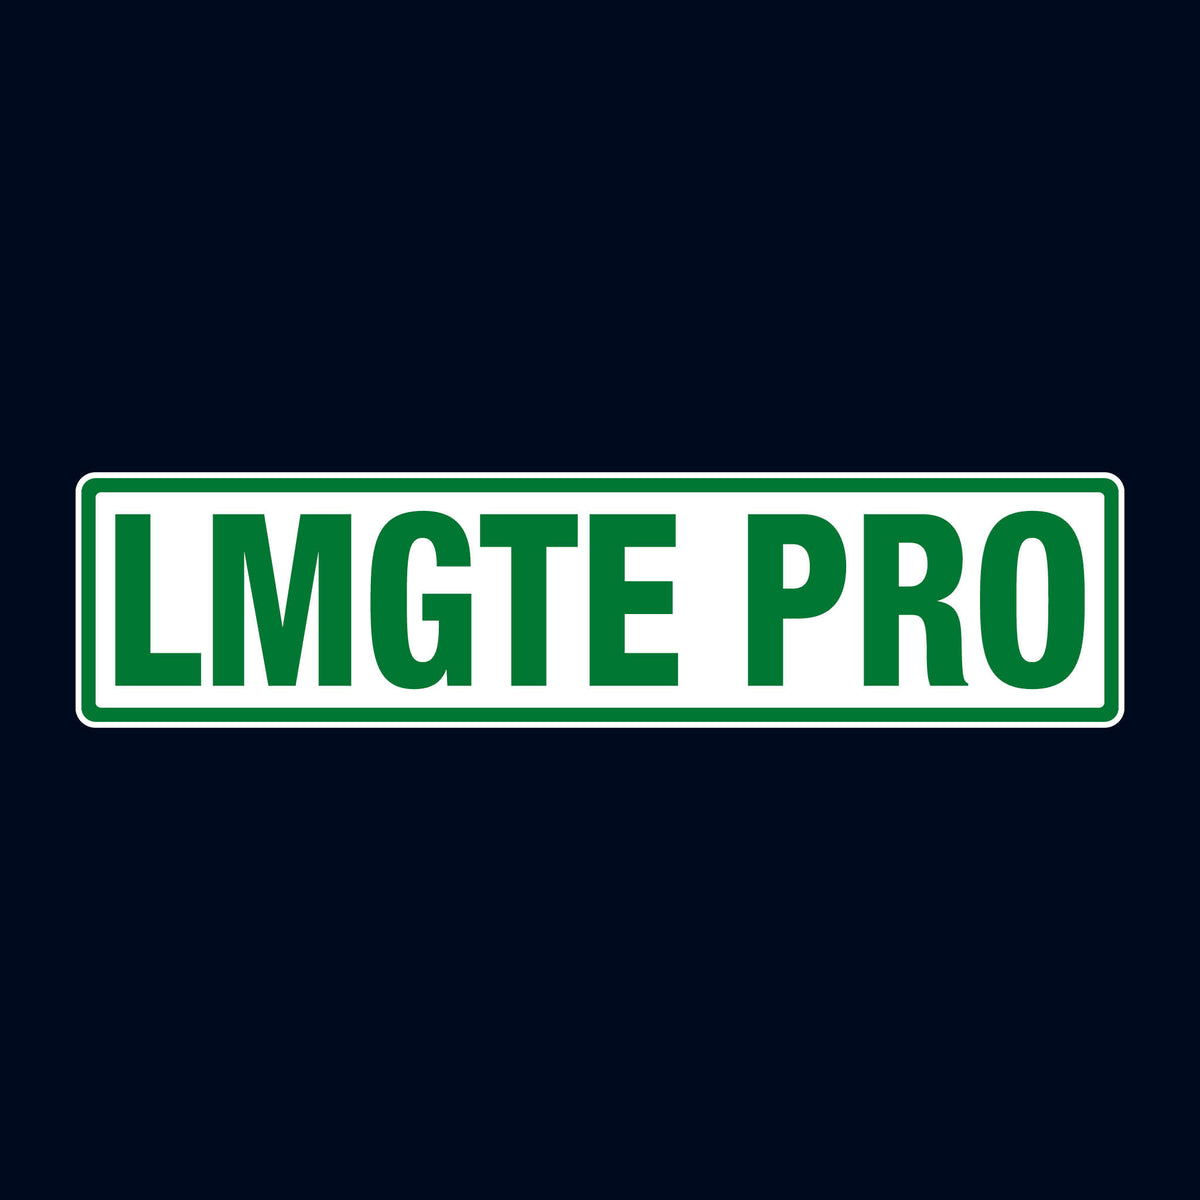 Le Mans Class Sticker - LMGTE PRO